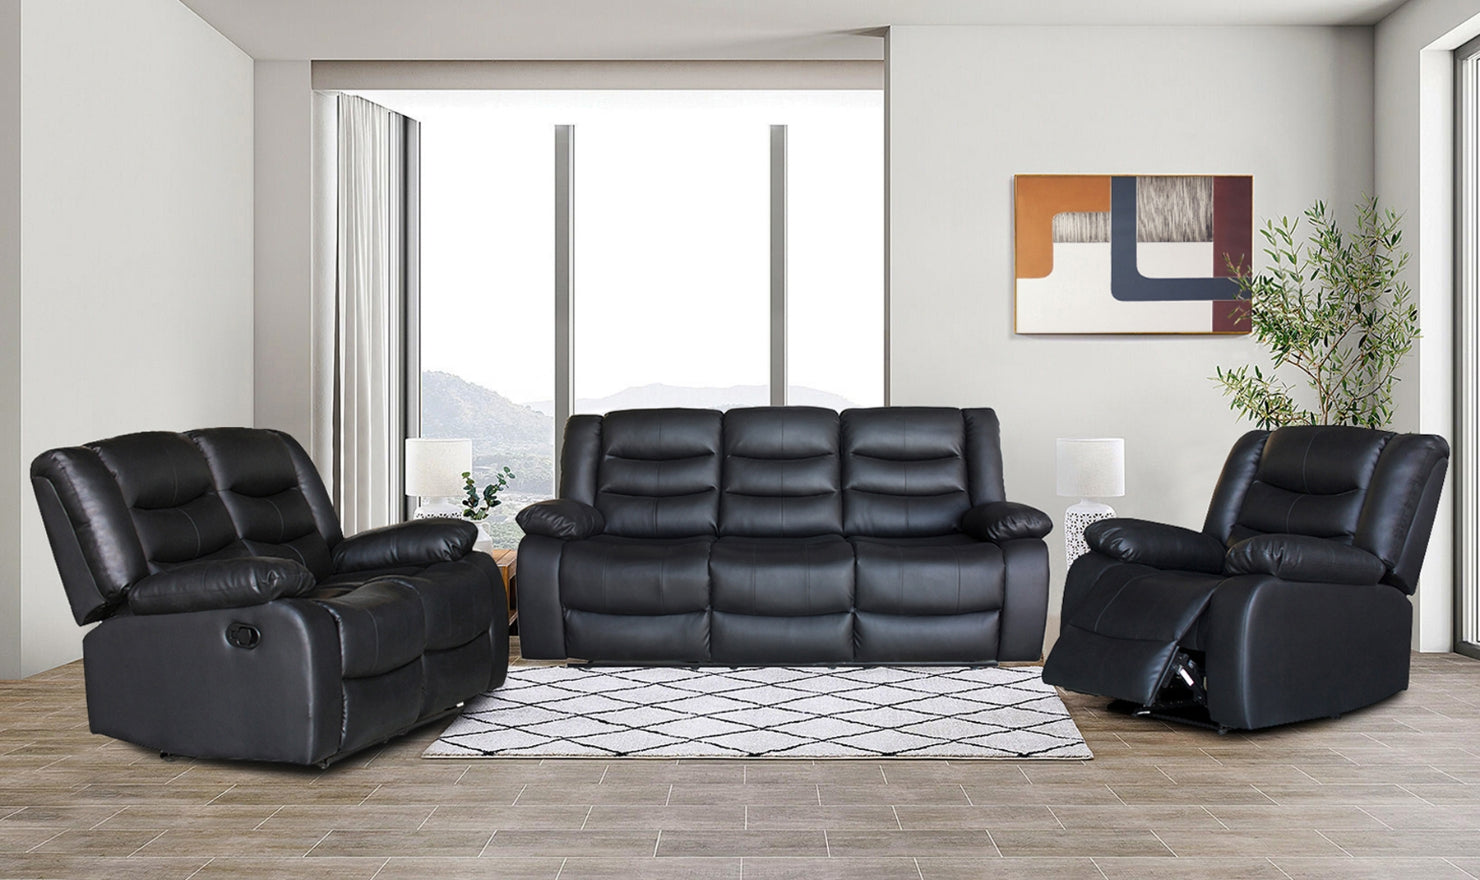 Dual recliner sofa